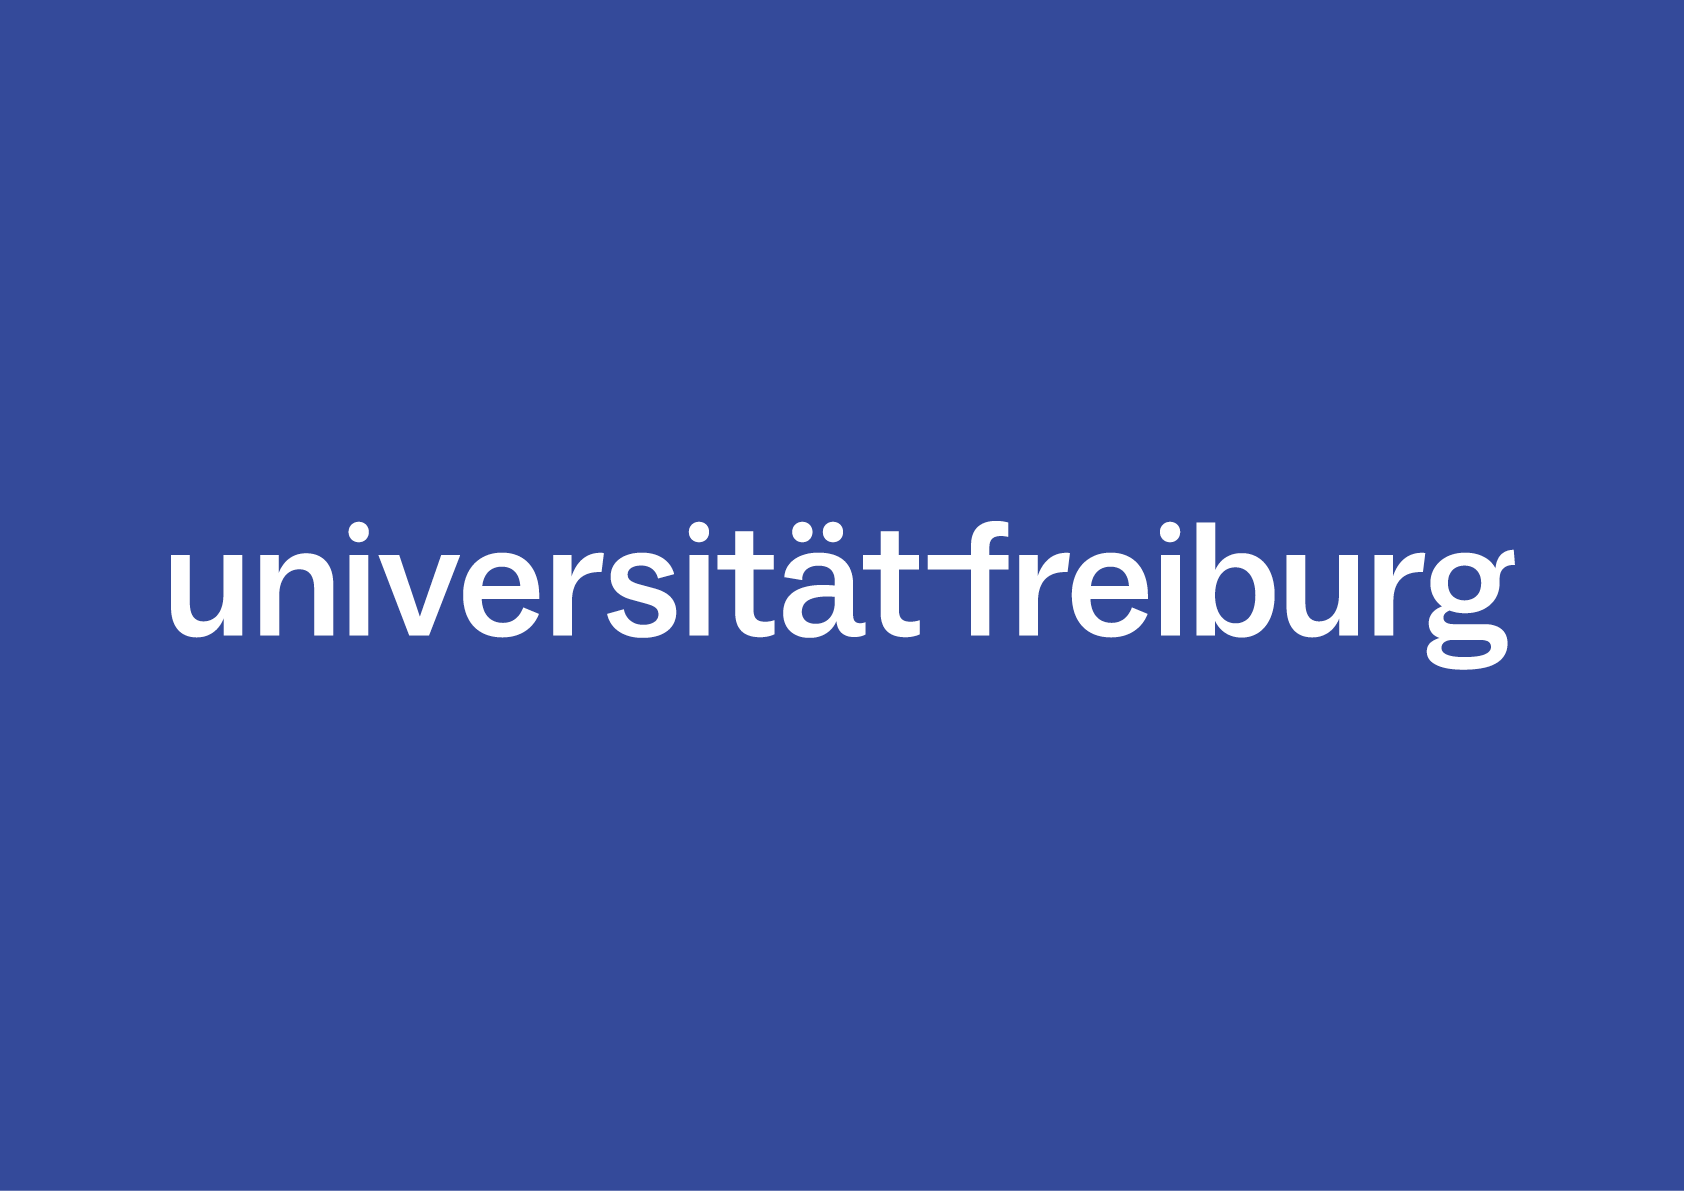 Weiße Wortmarke der Universität auf blauem Hintergrund